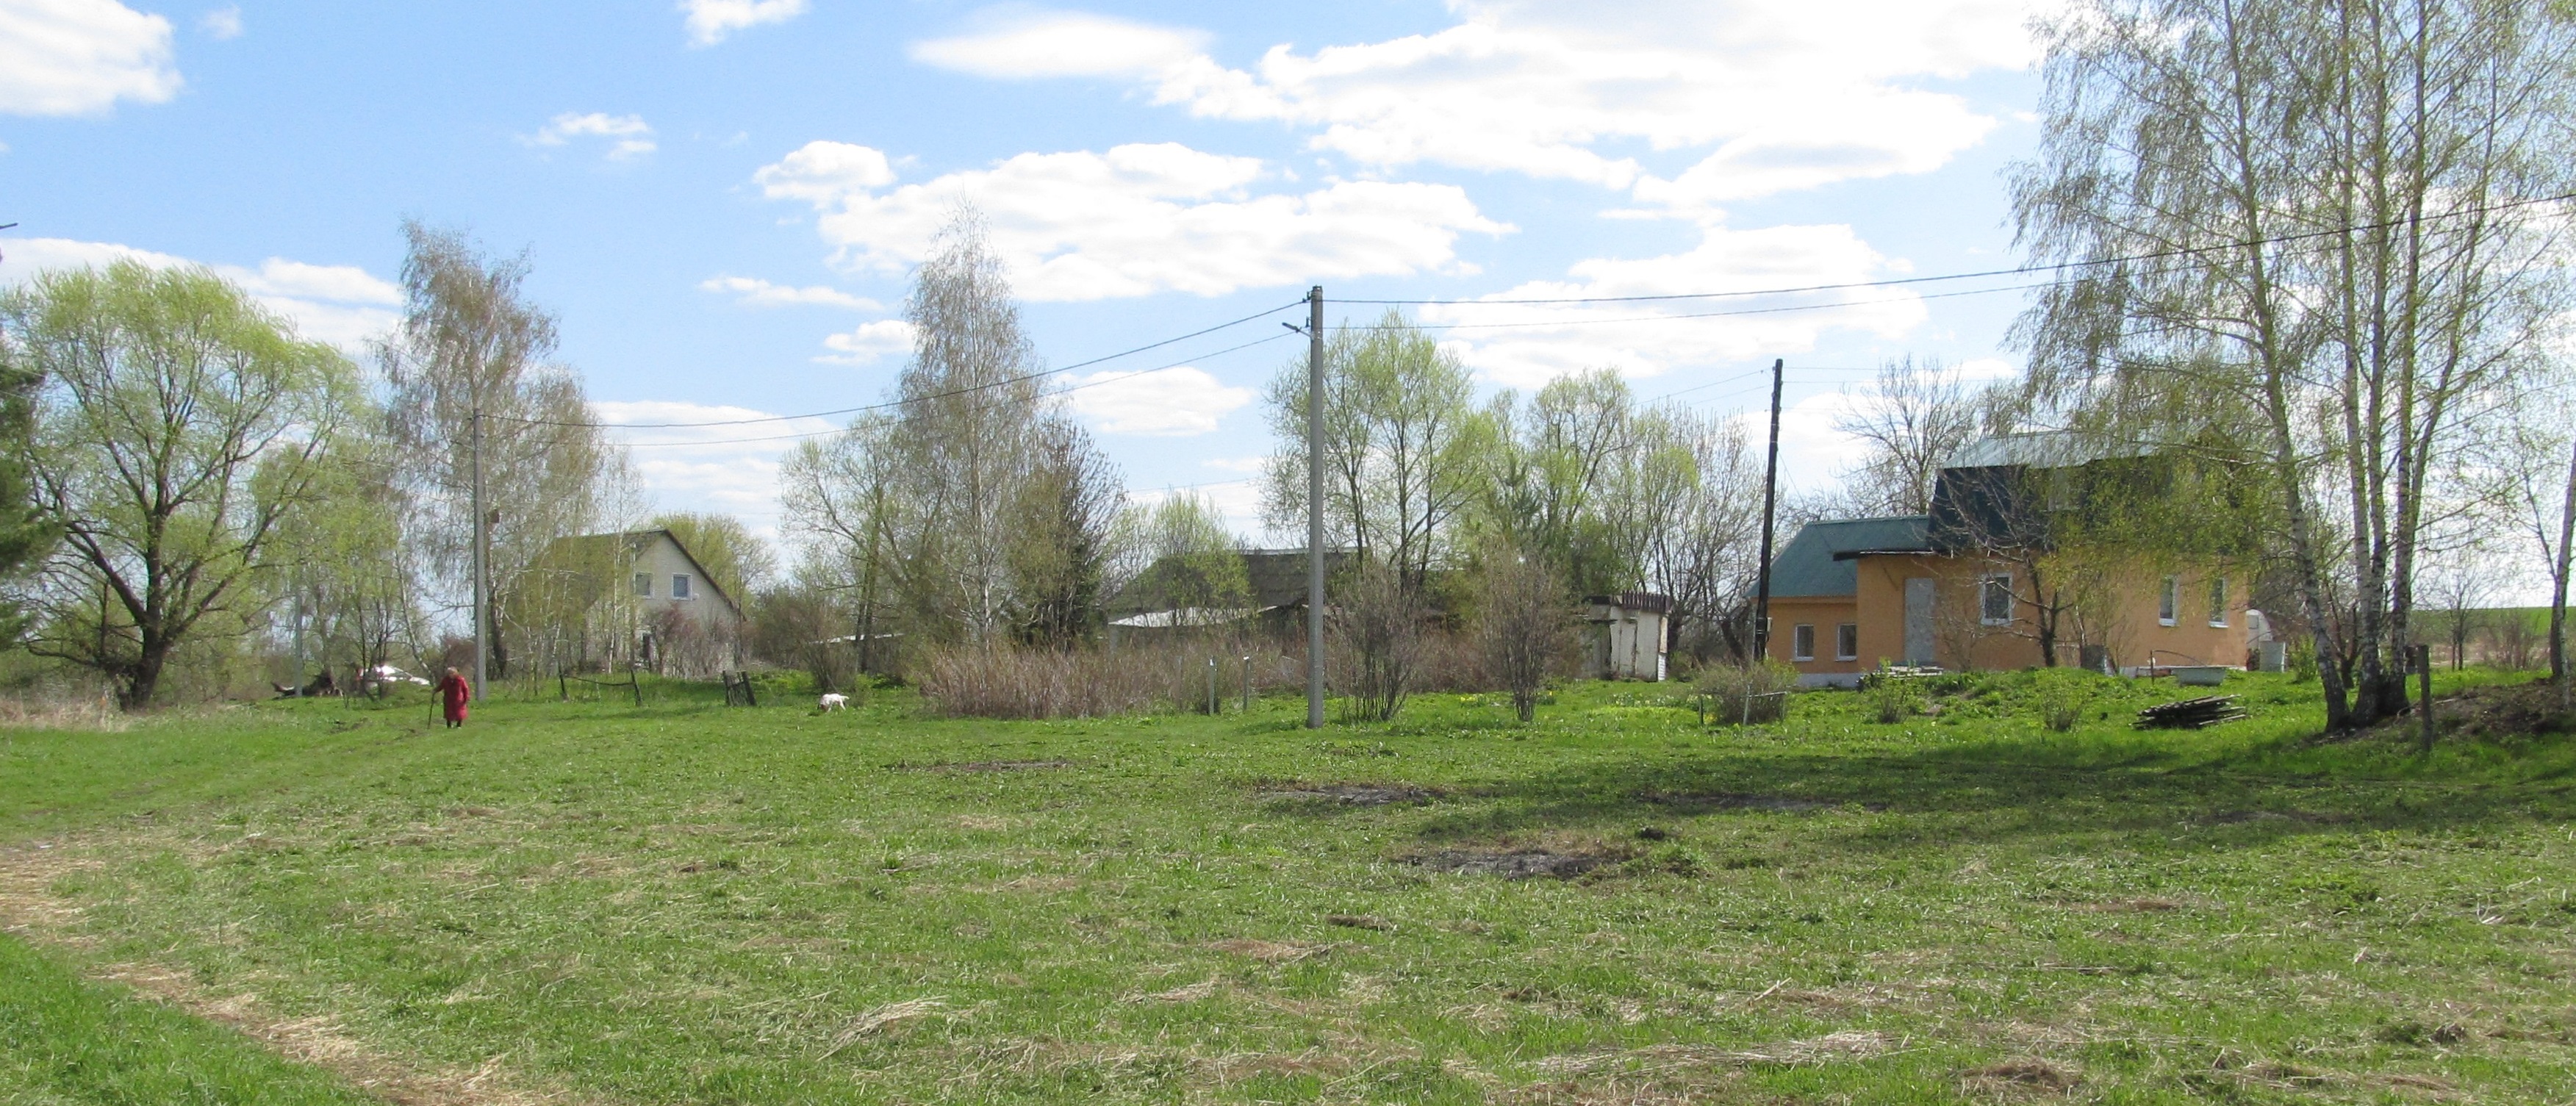 Обустройство зоны отдыха и досуга №1 в деревне Наумовка в районе дома №1 Щекинского района